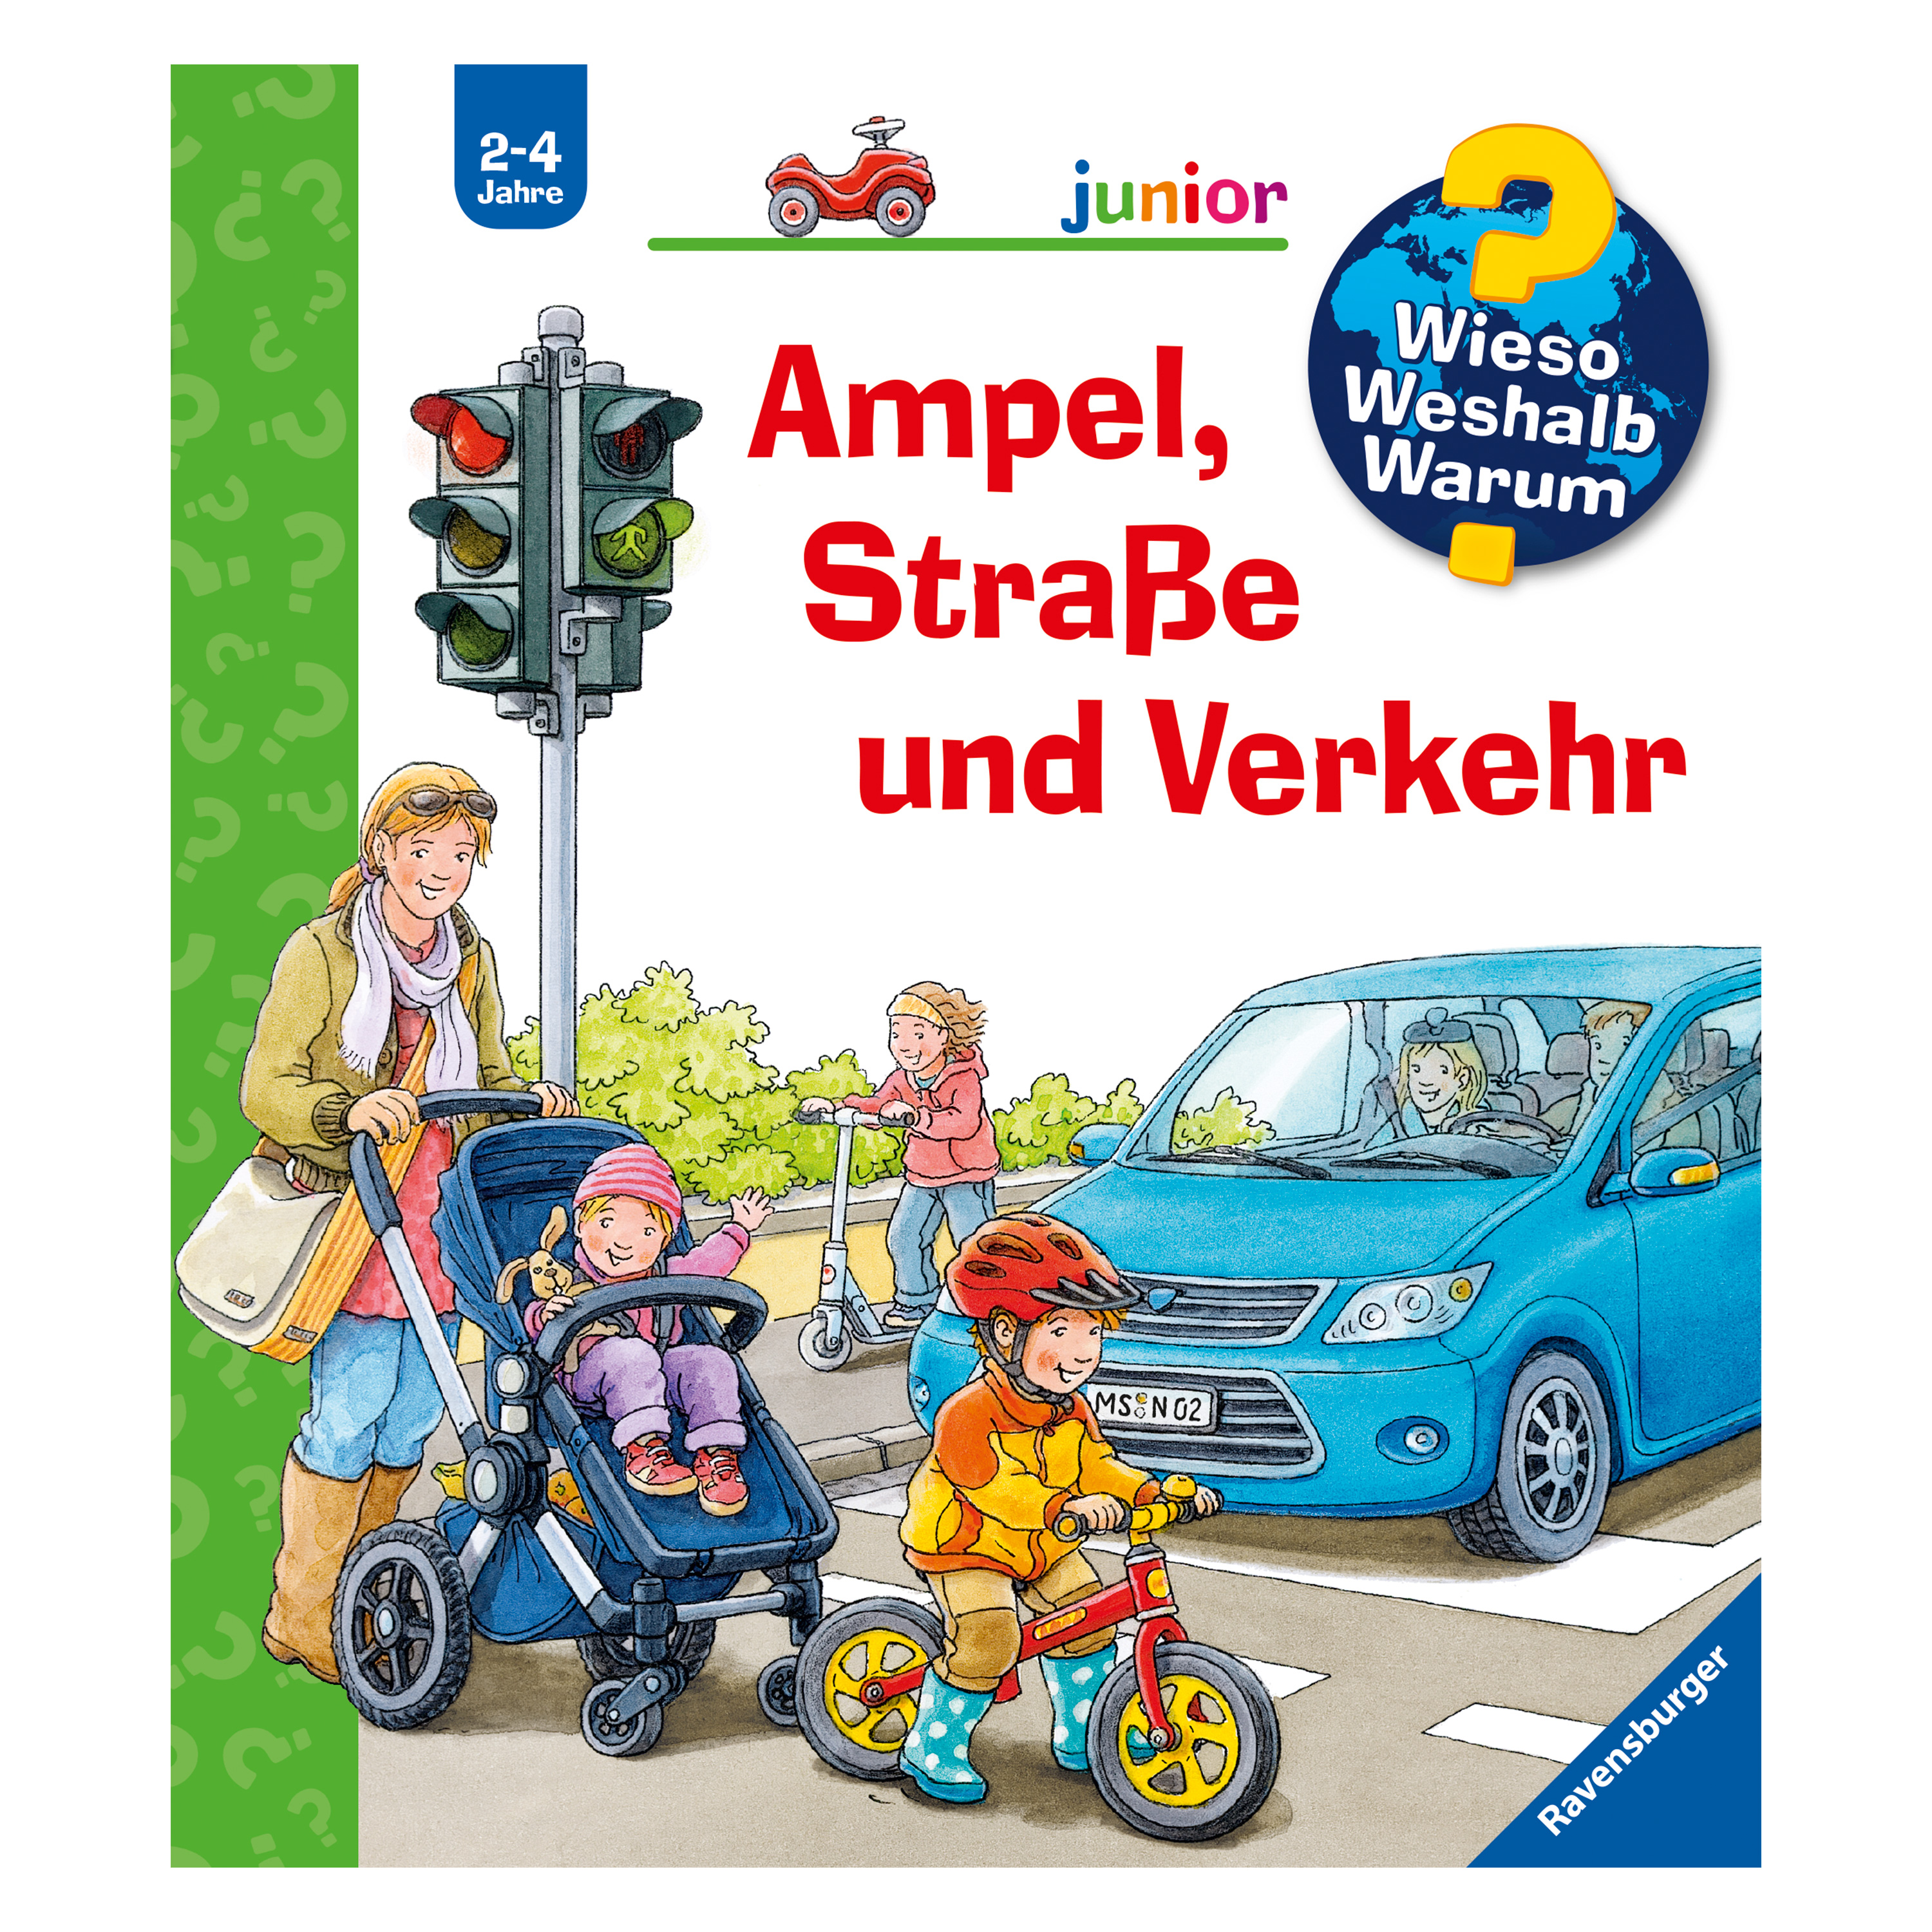 WWW Junior 'Ampel, Straße und Verkehr' (Bd. 48)